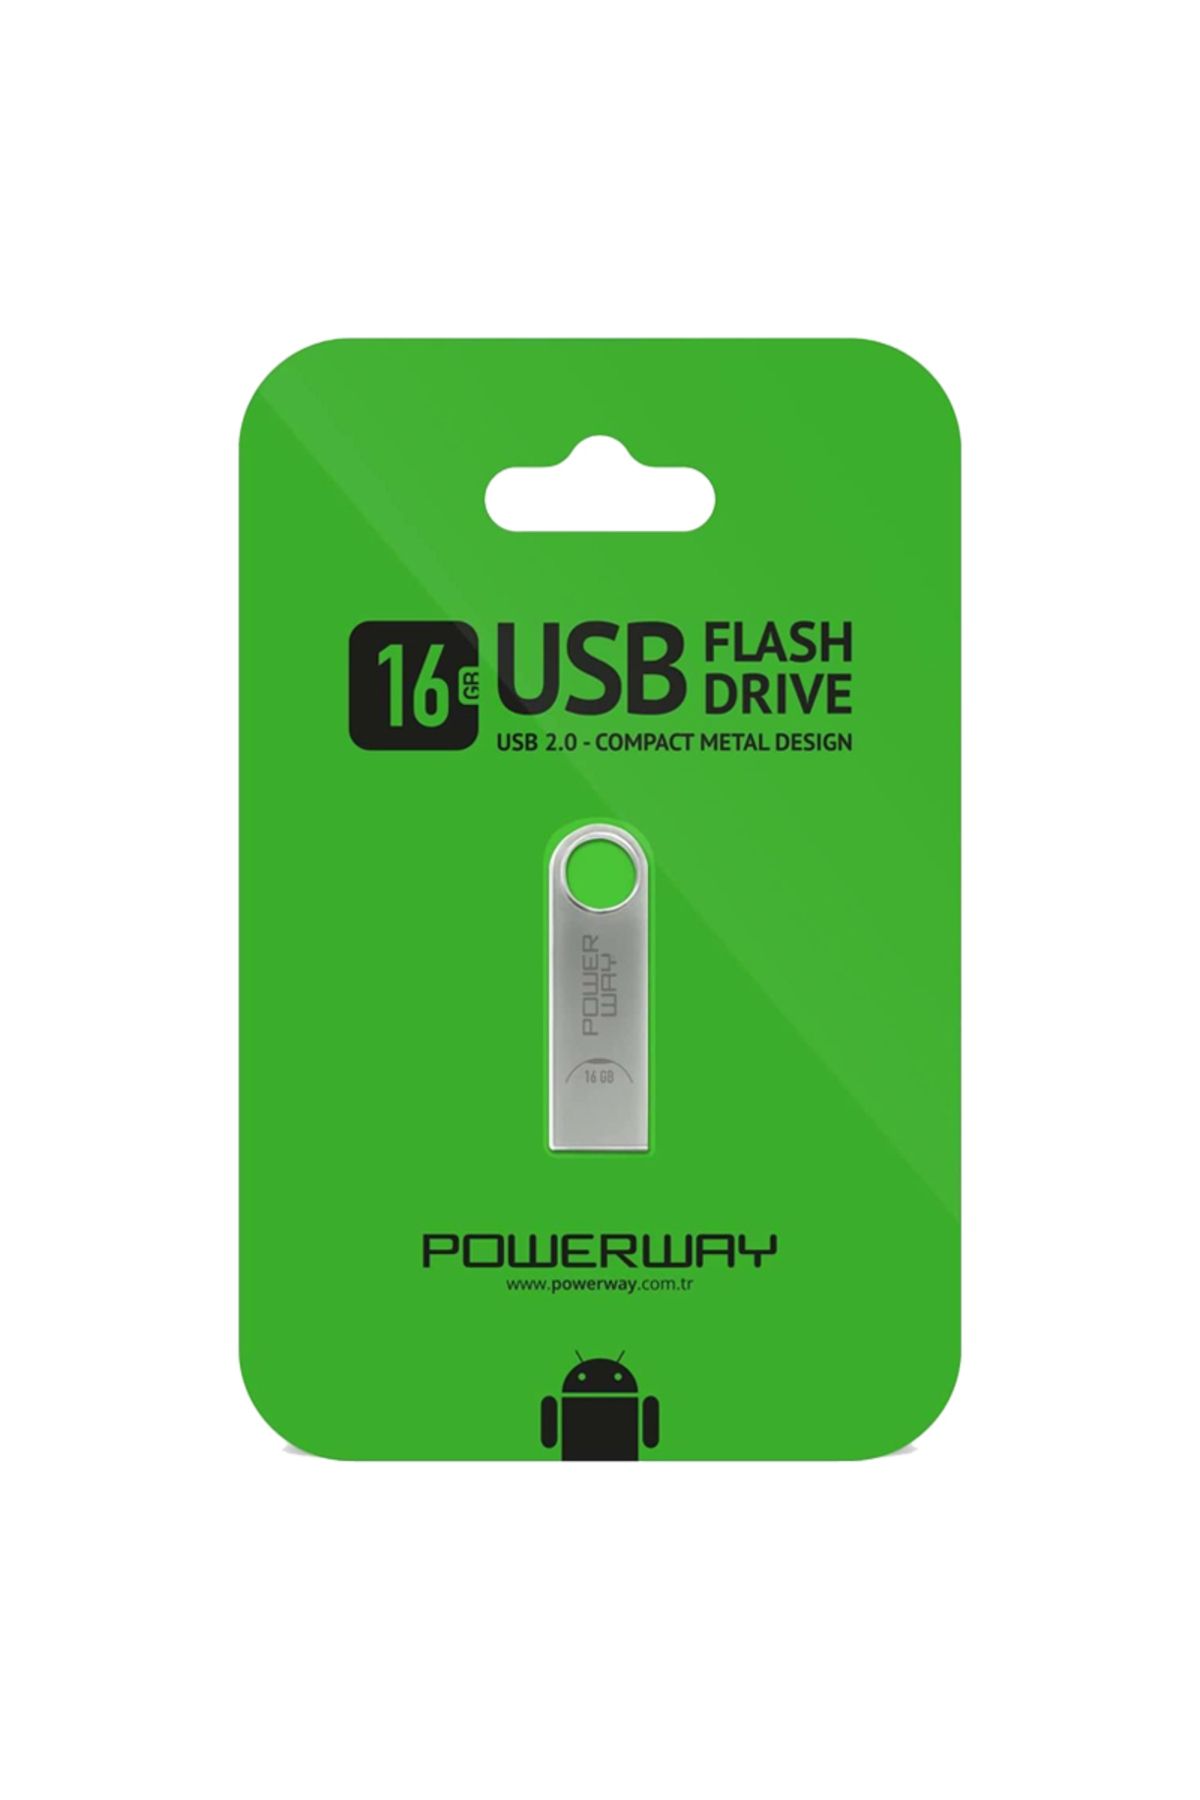 xmldünyası ShopZum 16 GB METAL USB 2.0 FLASH BELLEK